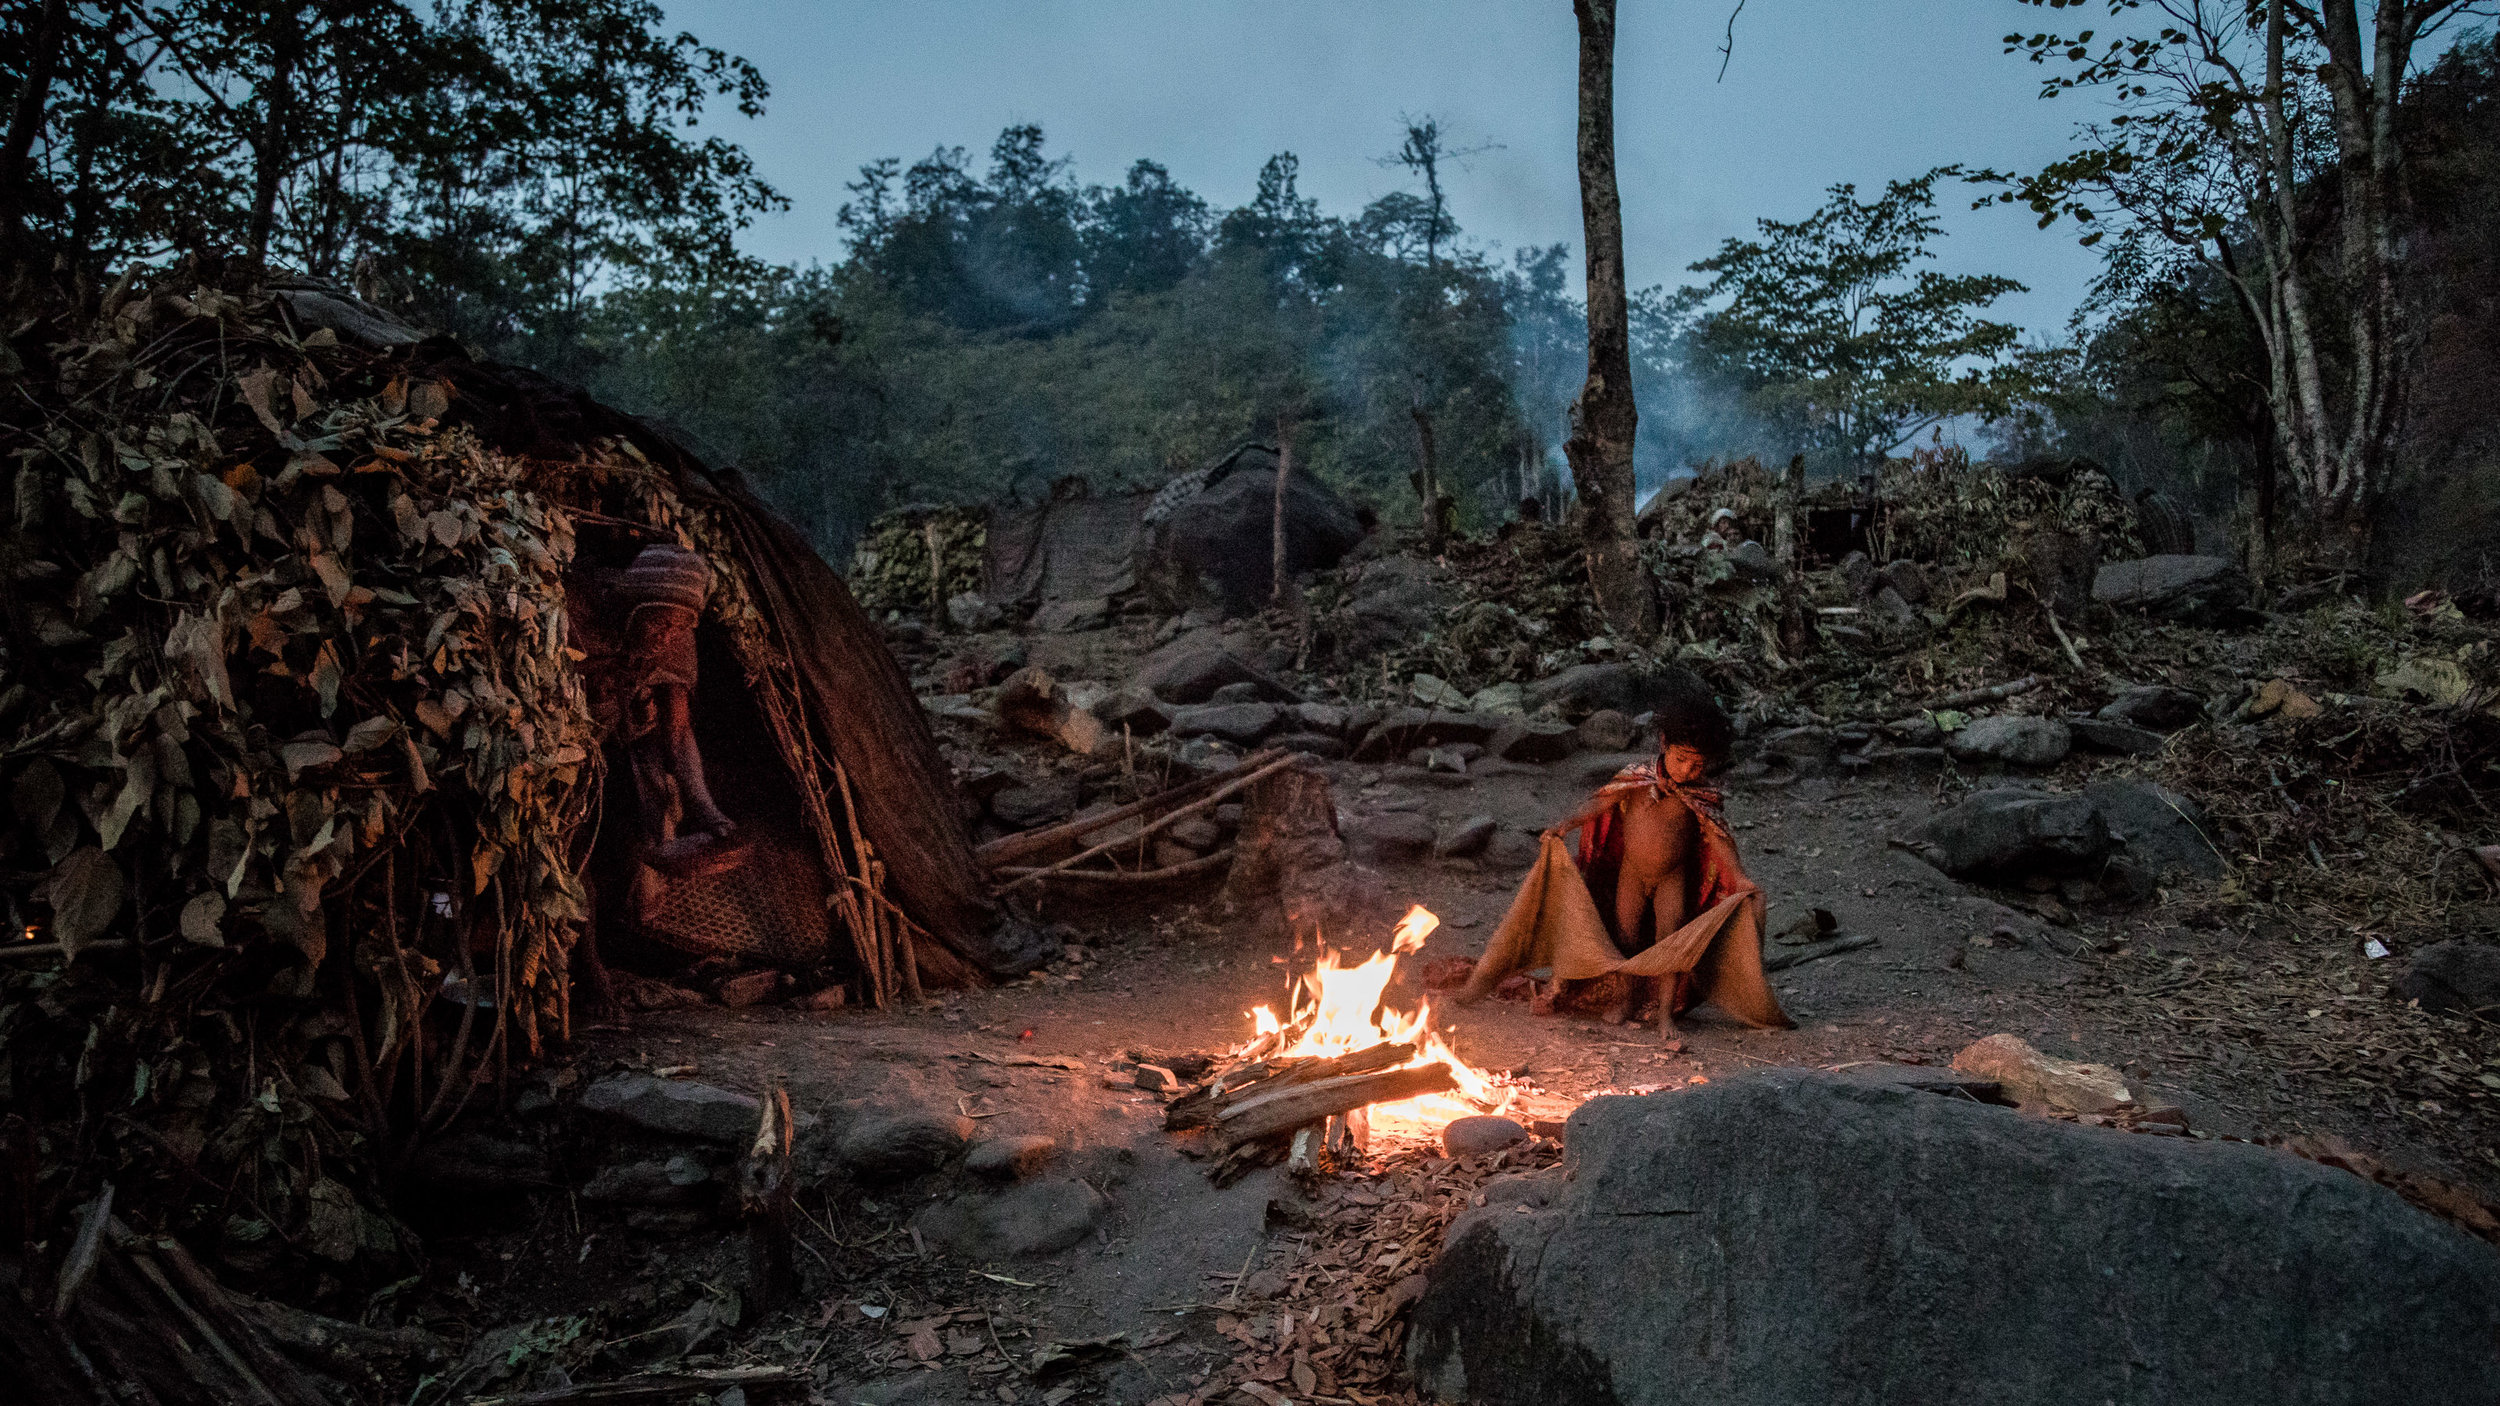   Over de Raute stam     De laatste nomaden van Nepal  